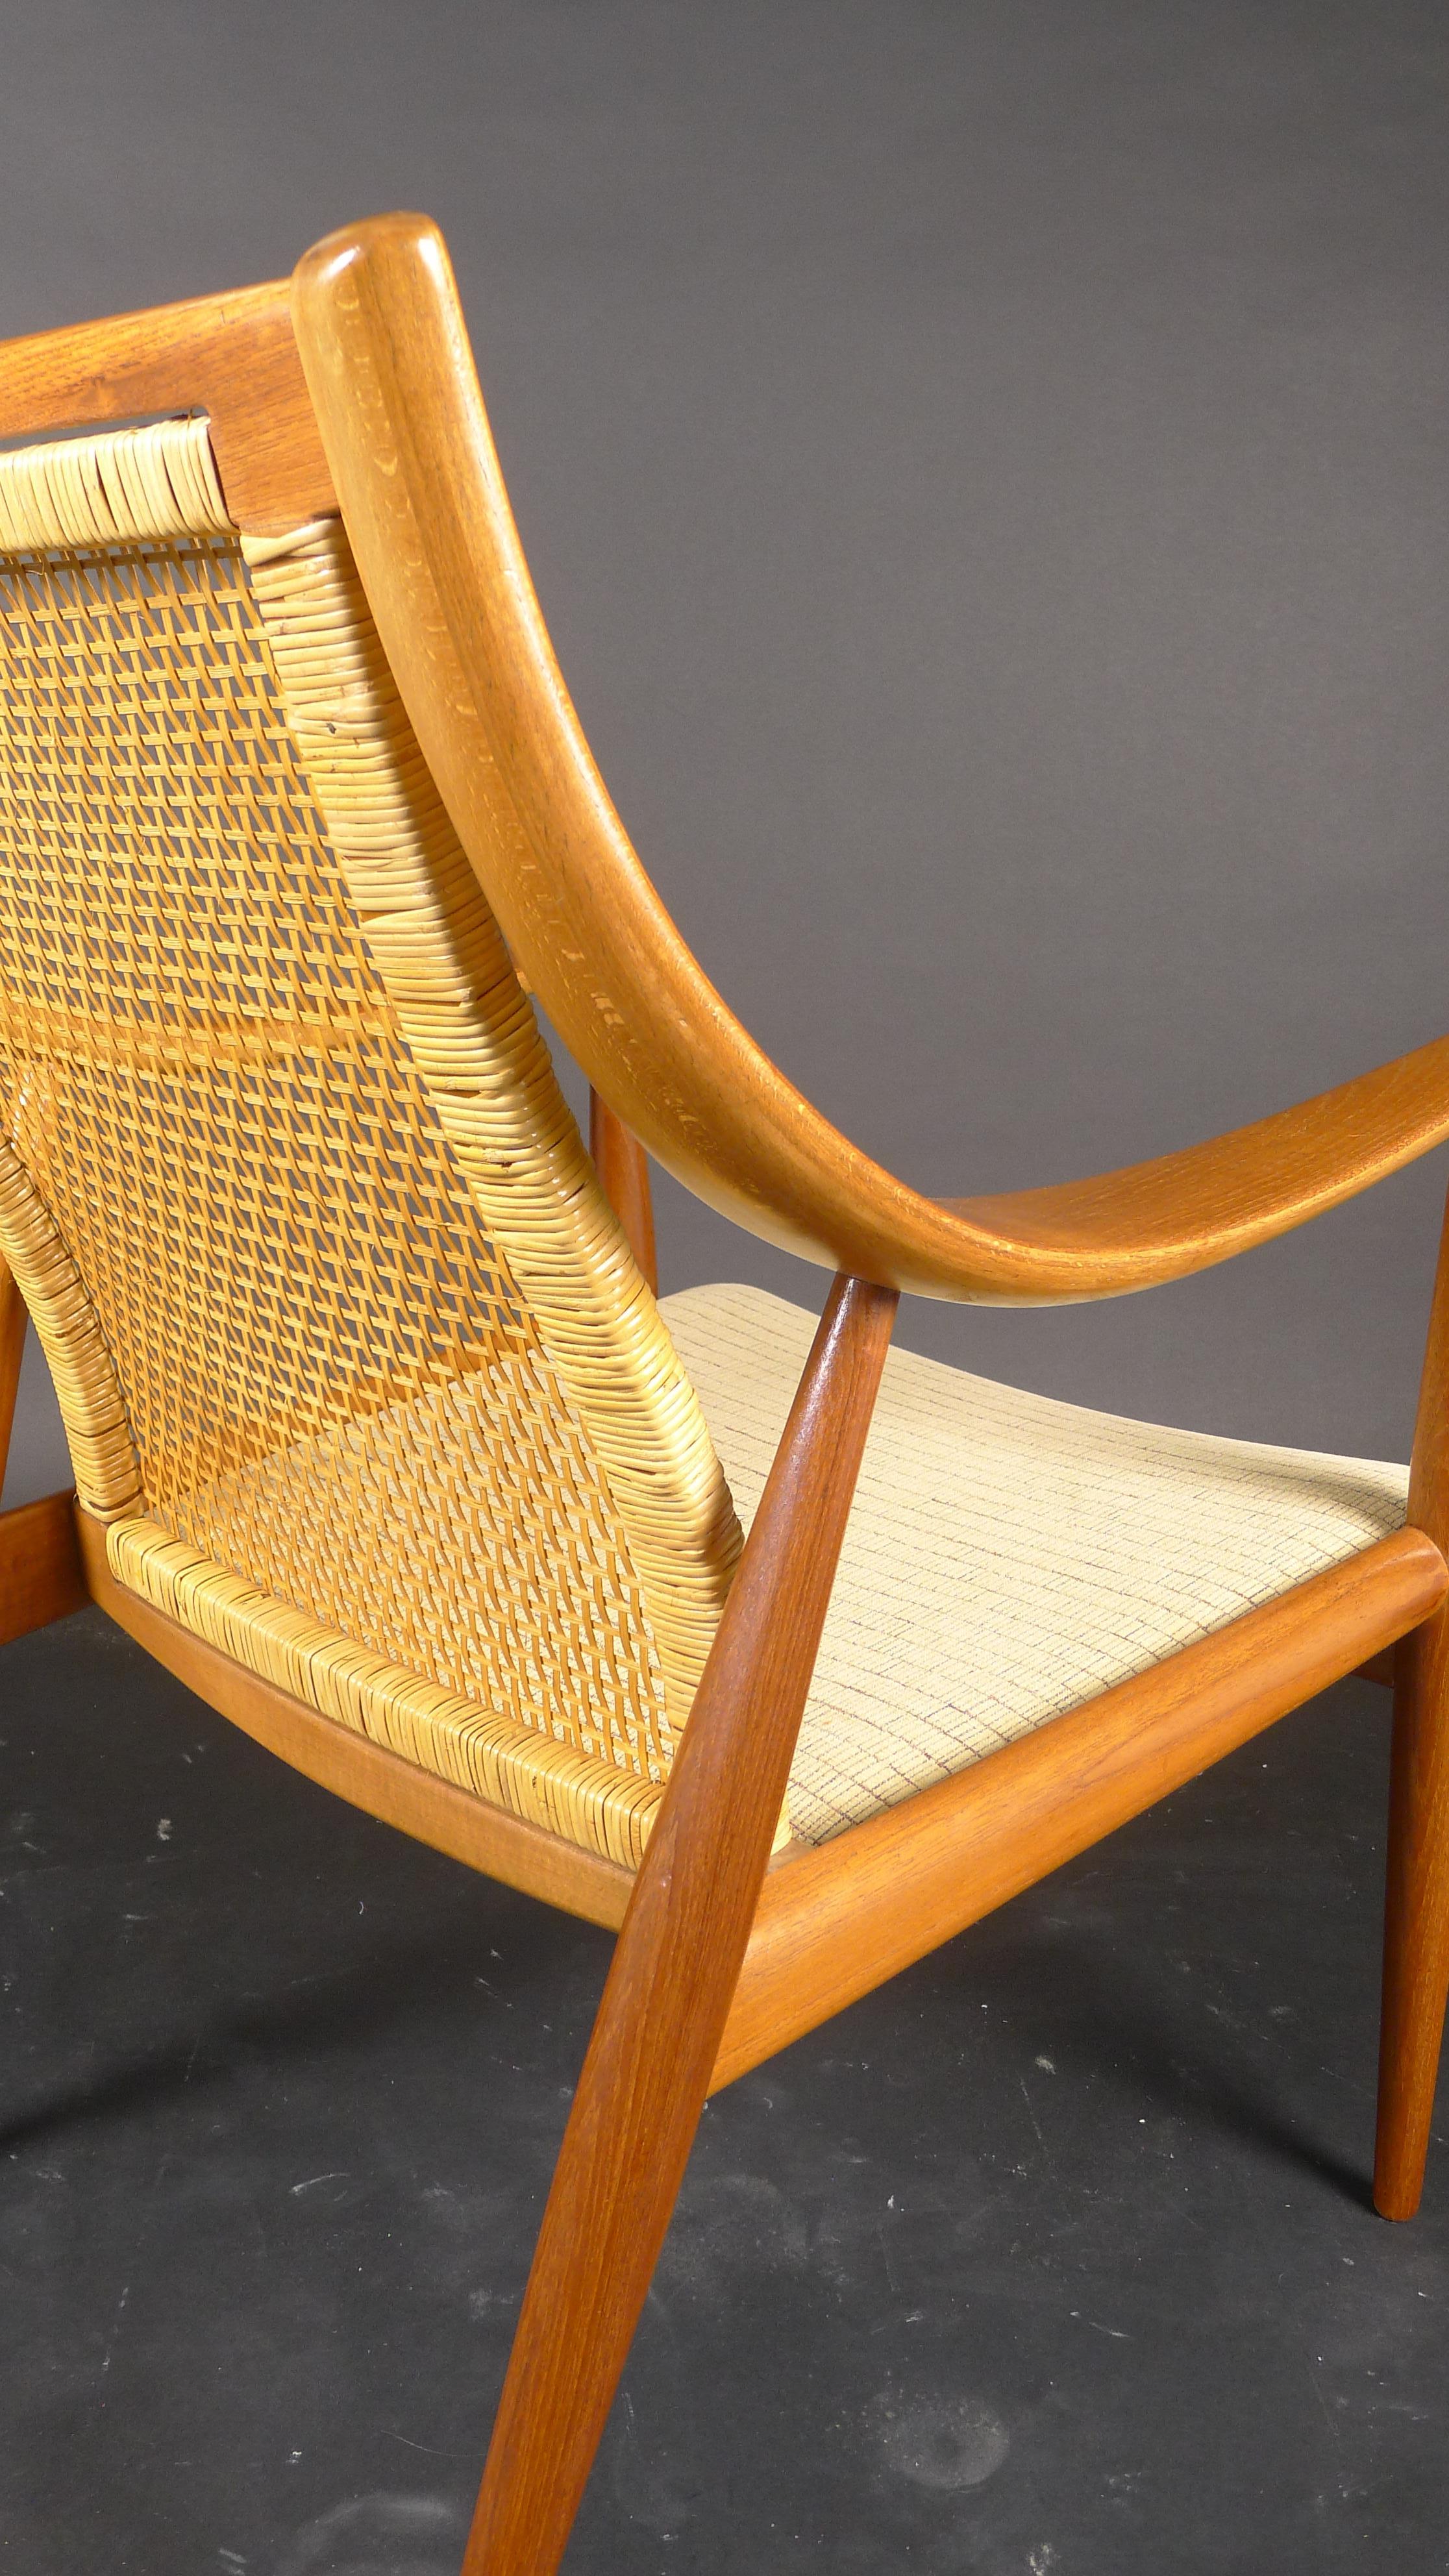 Mid-20th Century Peter Hvidt & Orla Mølgaard-Nielsen, Model 146 Easy Chair, France & Son, 1950s